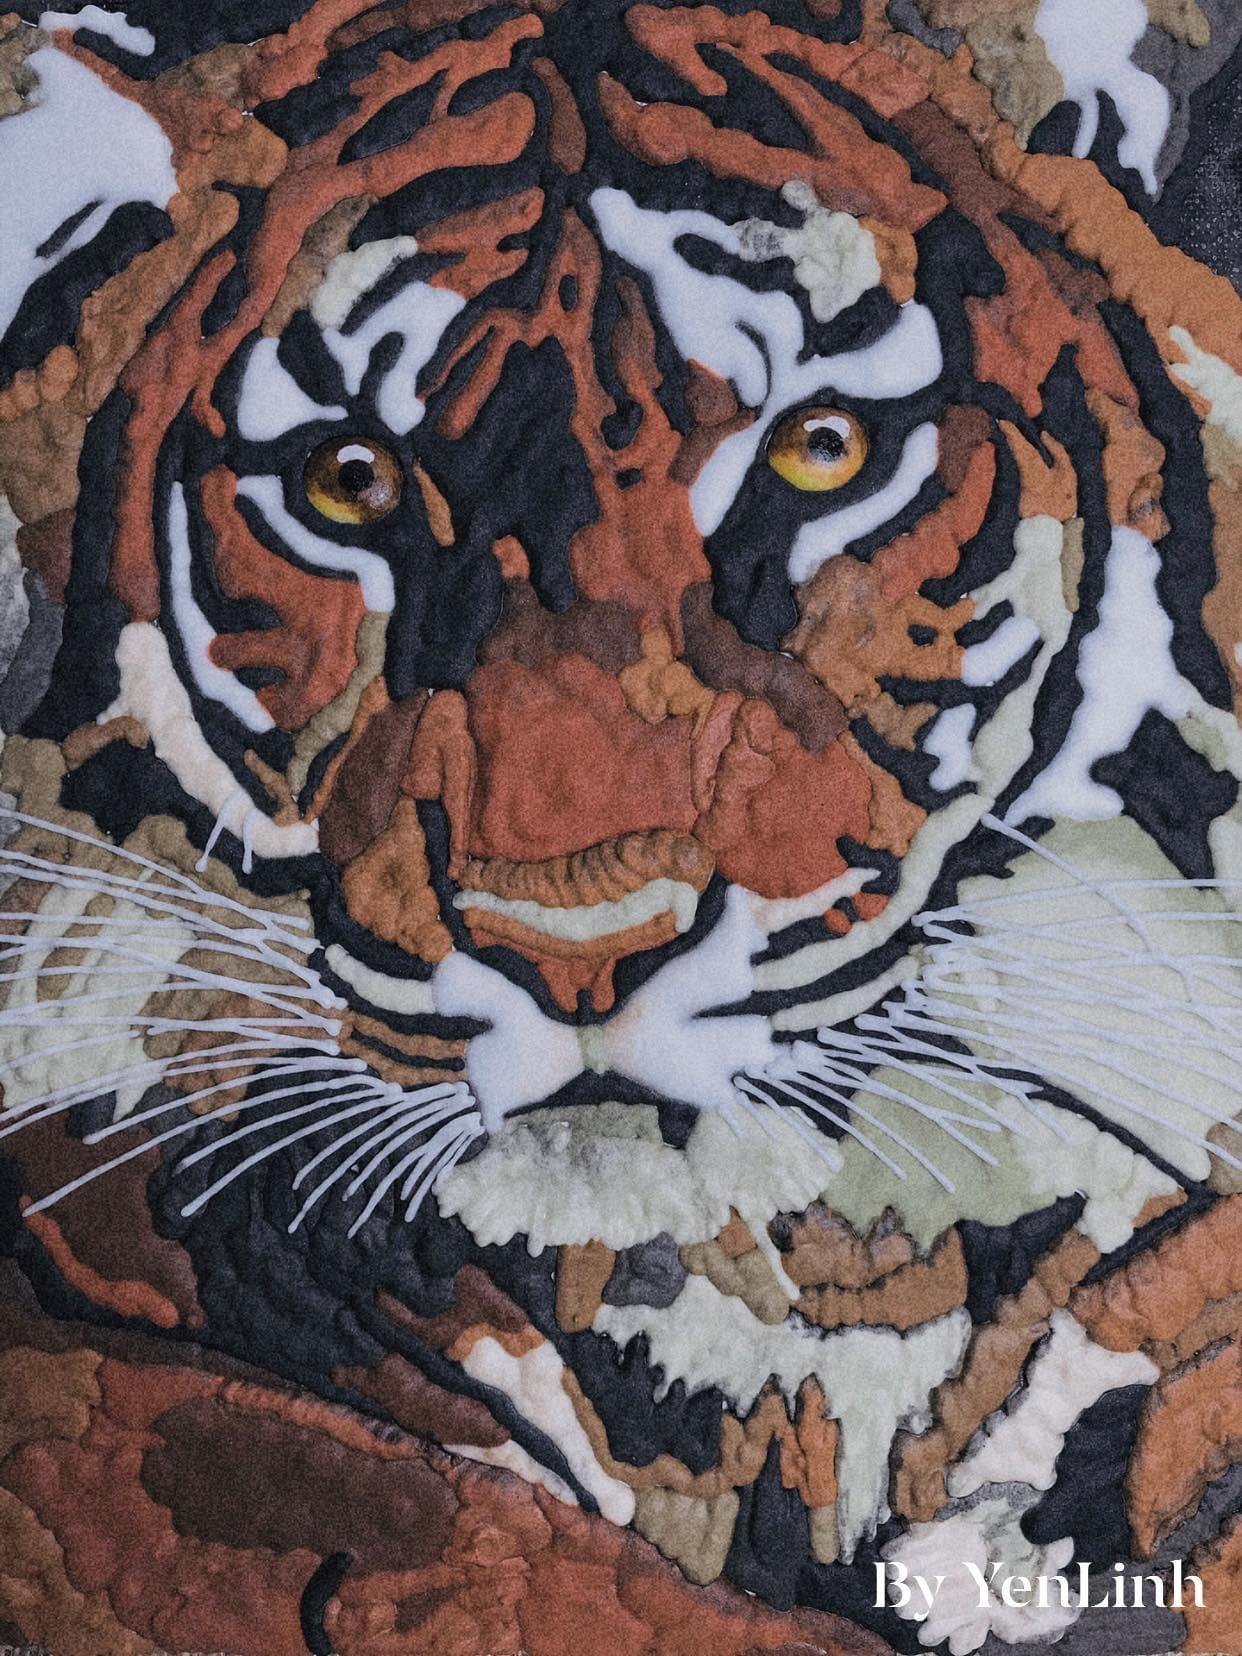 Con hổ bằng bút chì là một trong những tác phẩm nghệ thuật độc đáo và đẹp mắt nhất. Với các đường nét chính xác và phong cách nghệ thuật riêng, chắc hẳn bạn sẽ không thể rời mắt khỏi tác phẩm này.